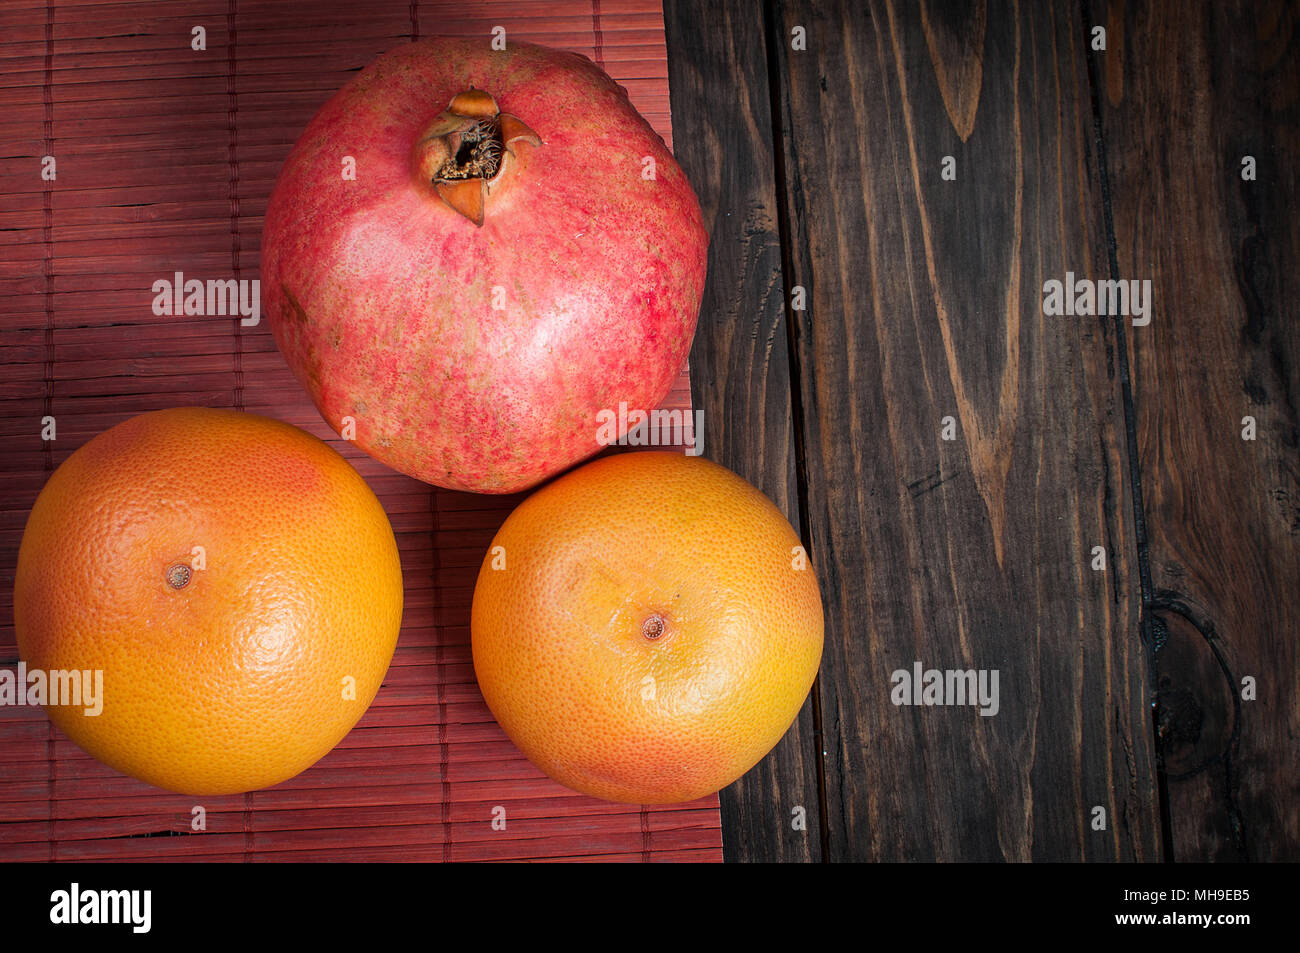 grapefruit size comparison